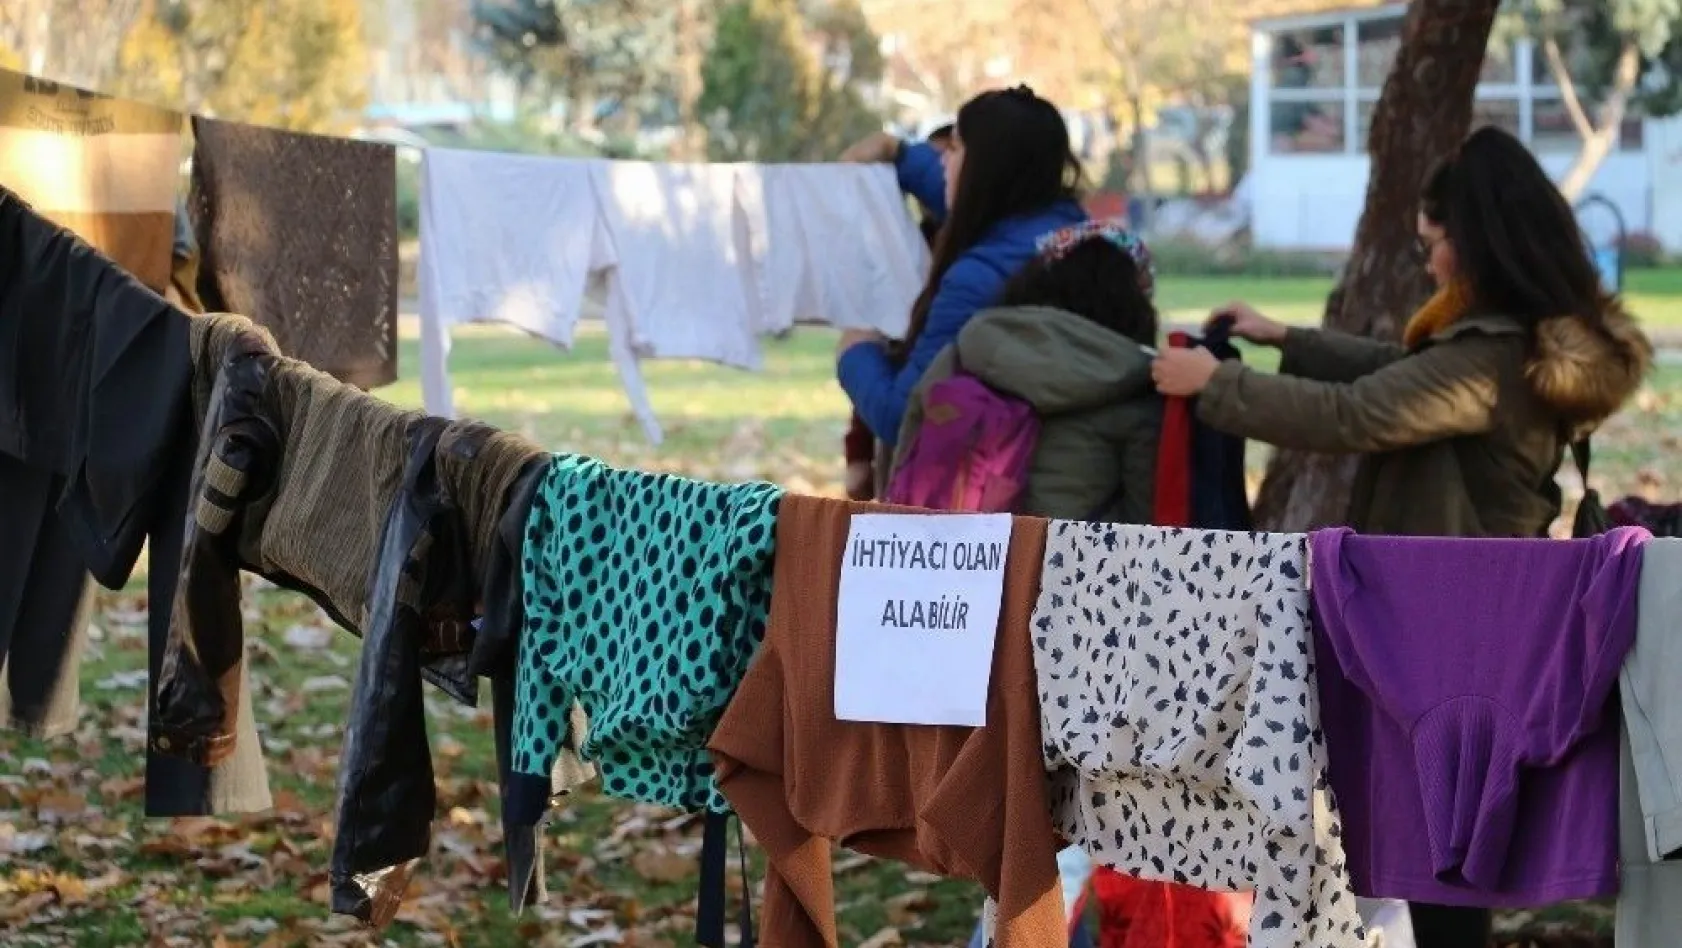 Türkiye'nin dört bir yanından gelen yardımları 'Askıda elbise' ile yardıma muhtaçlara ulaştırıyorlar
